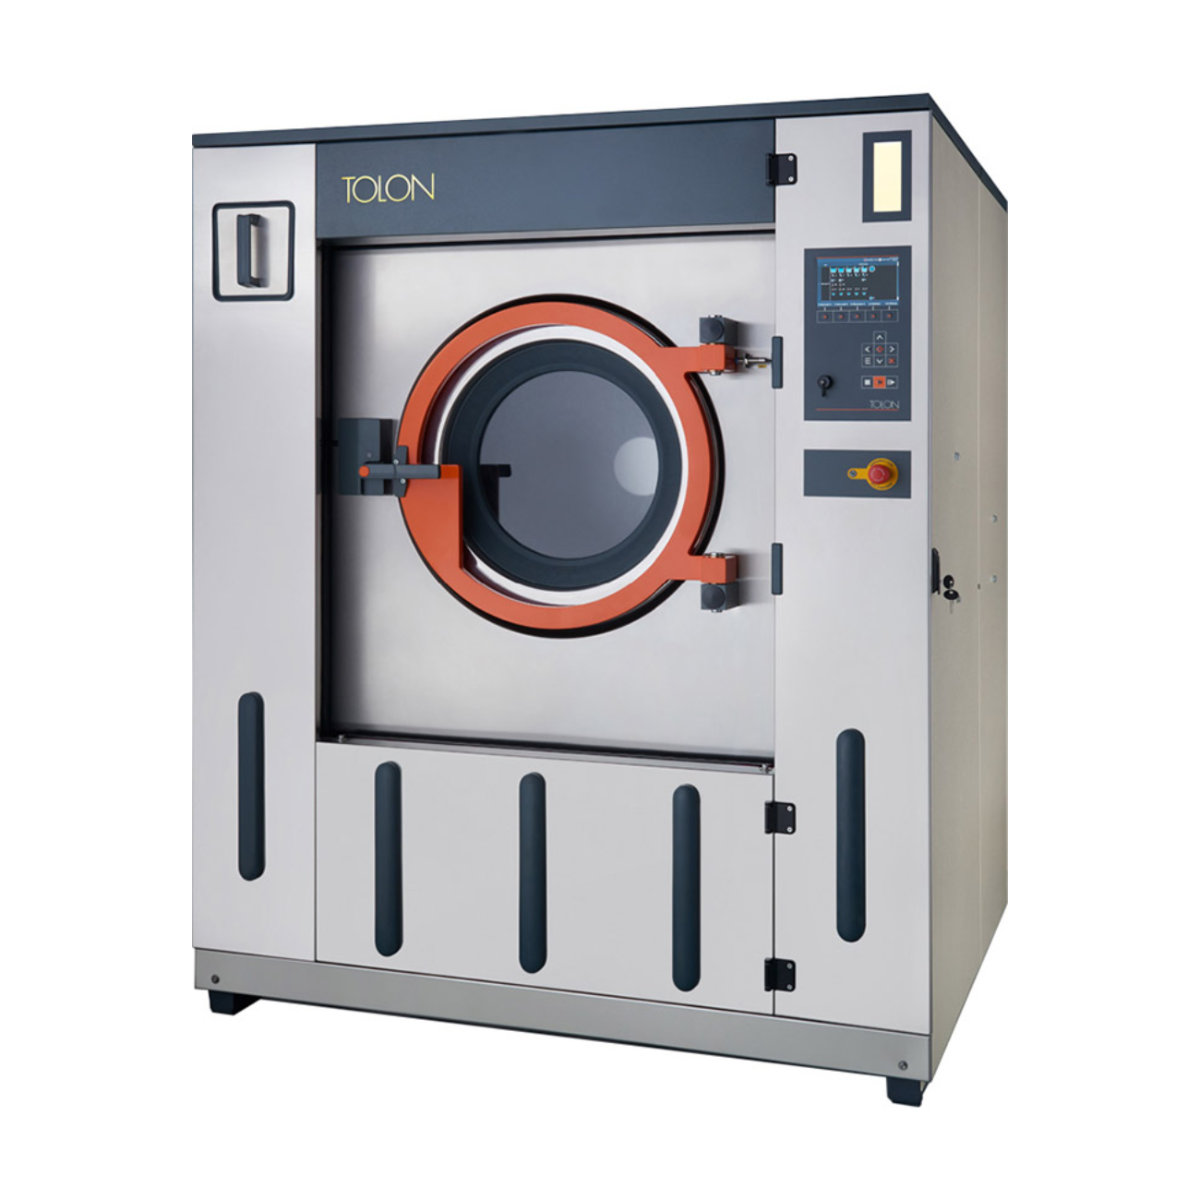 Lave-linge industriel 60 kg à basculement avant avec essoreuse - Design compact et moderne - TWE 60_0